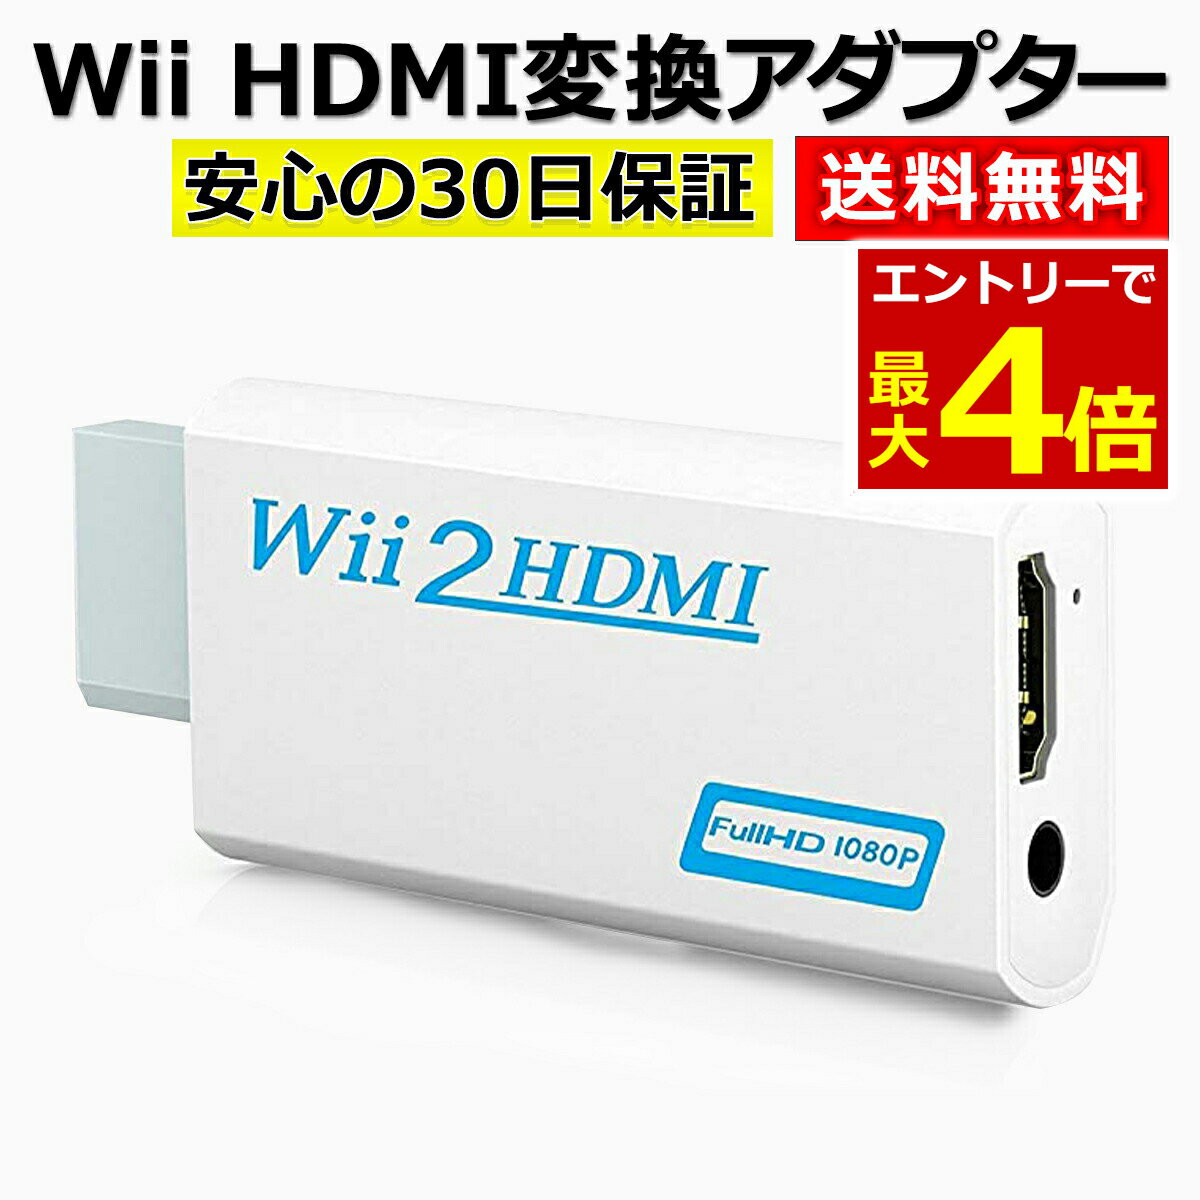 【6/7当店エントリーP最大4倍!&お買回り】Wii HDMI 変換 アダプター コンバーター HDMI接続 ウィー 任天堂 hdmi 接続 コネクター テレビ 変換アダプター